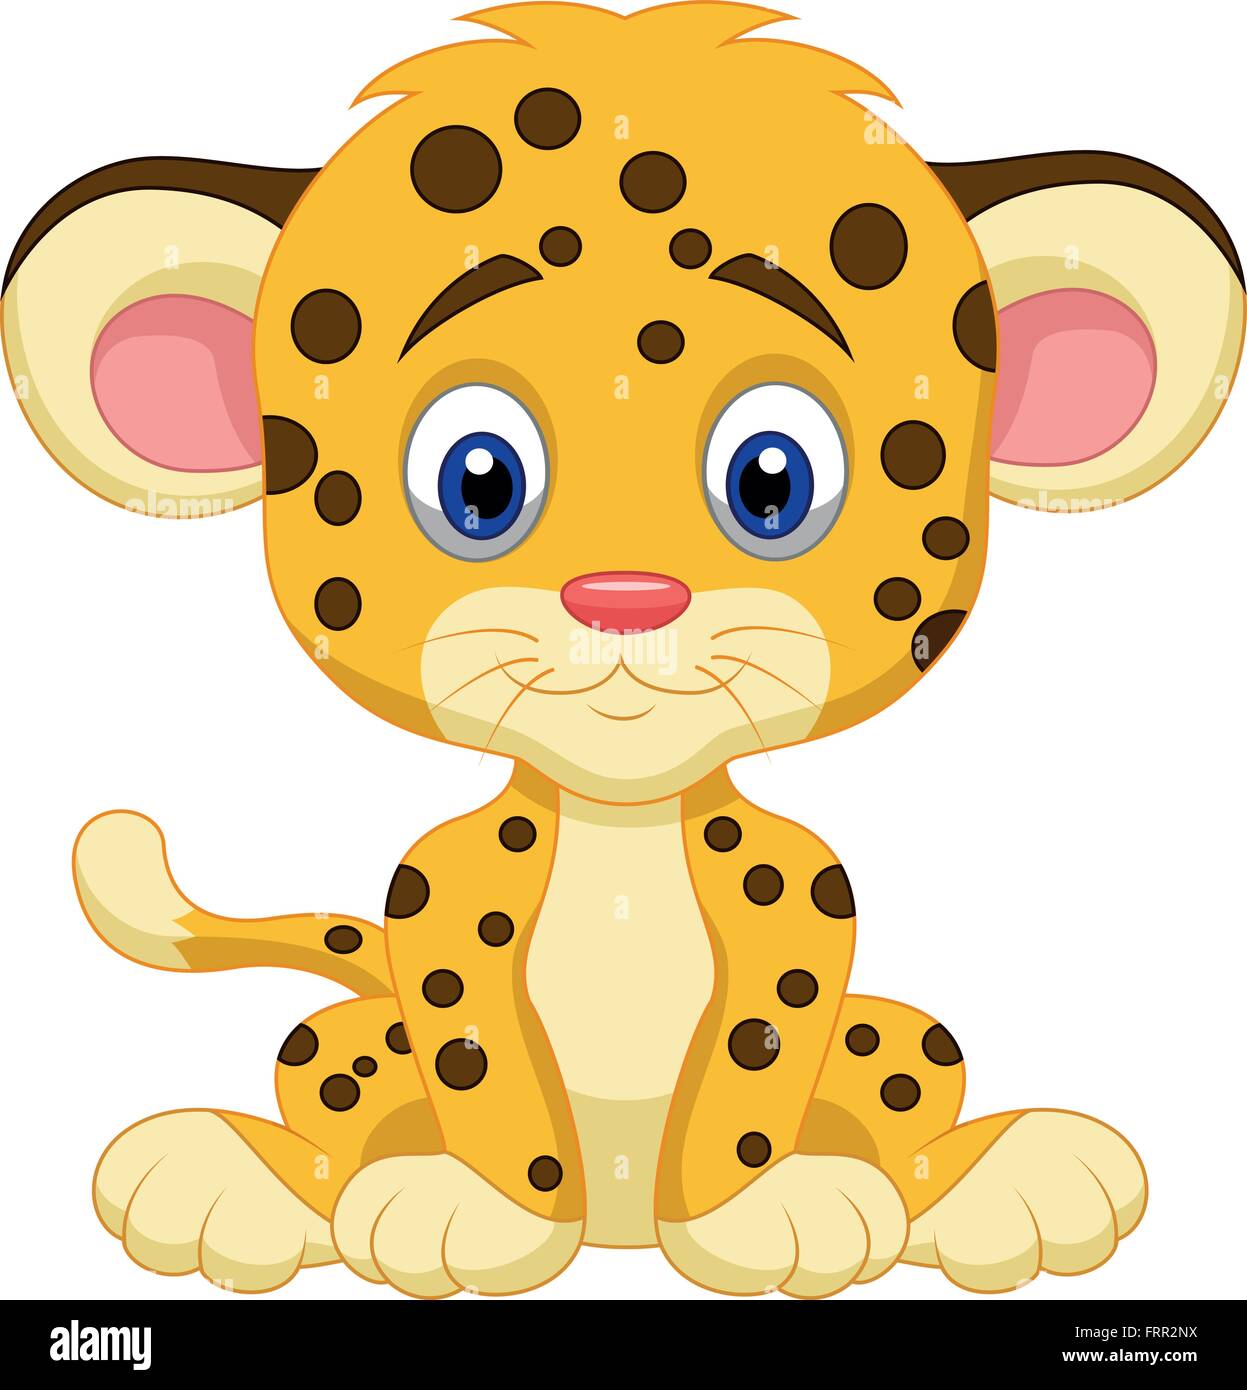 Cute leopard cartoon Stock Vector Image & Art - Alamy